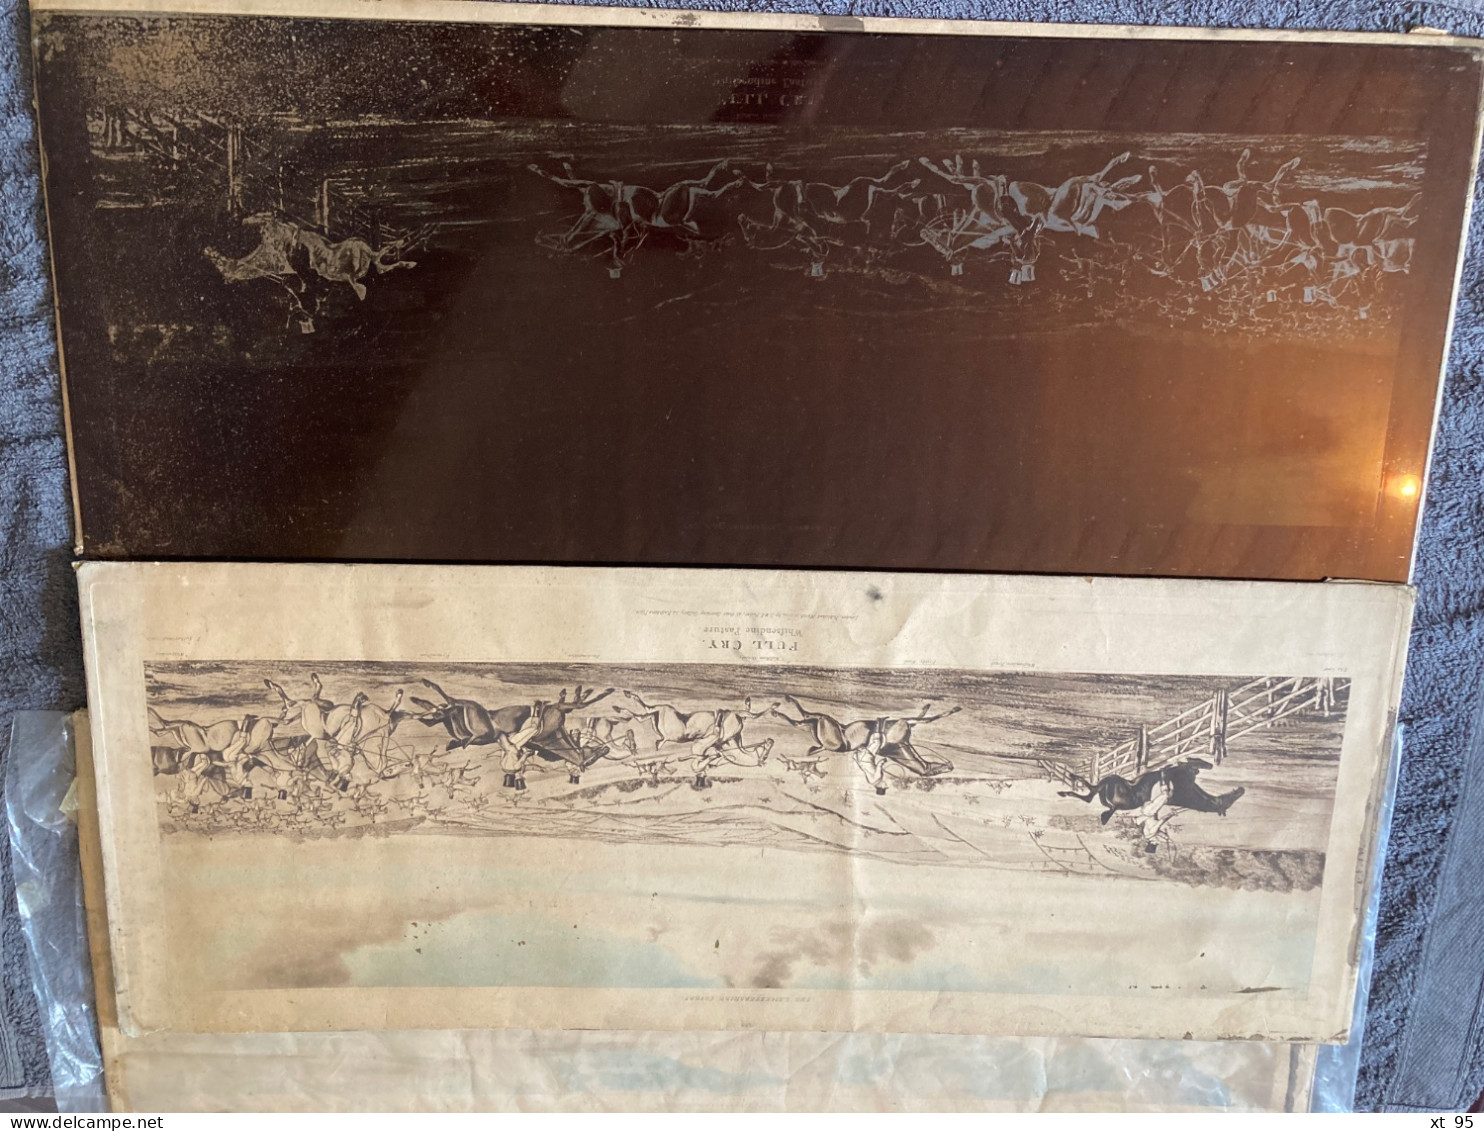 3 Plaques d'acier gravees - Scenes chasse anglaise - 75x30 cm - 3 matrices + 3 tirages